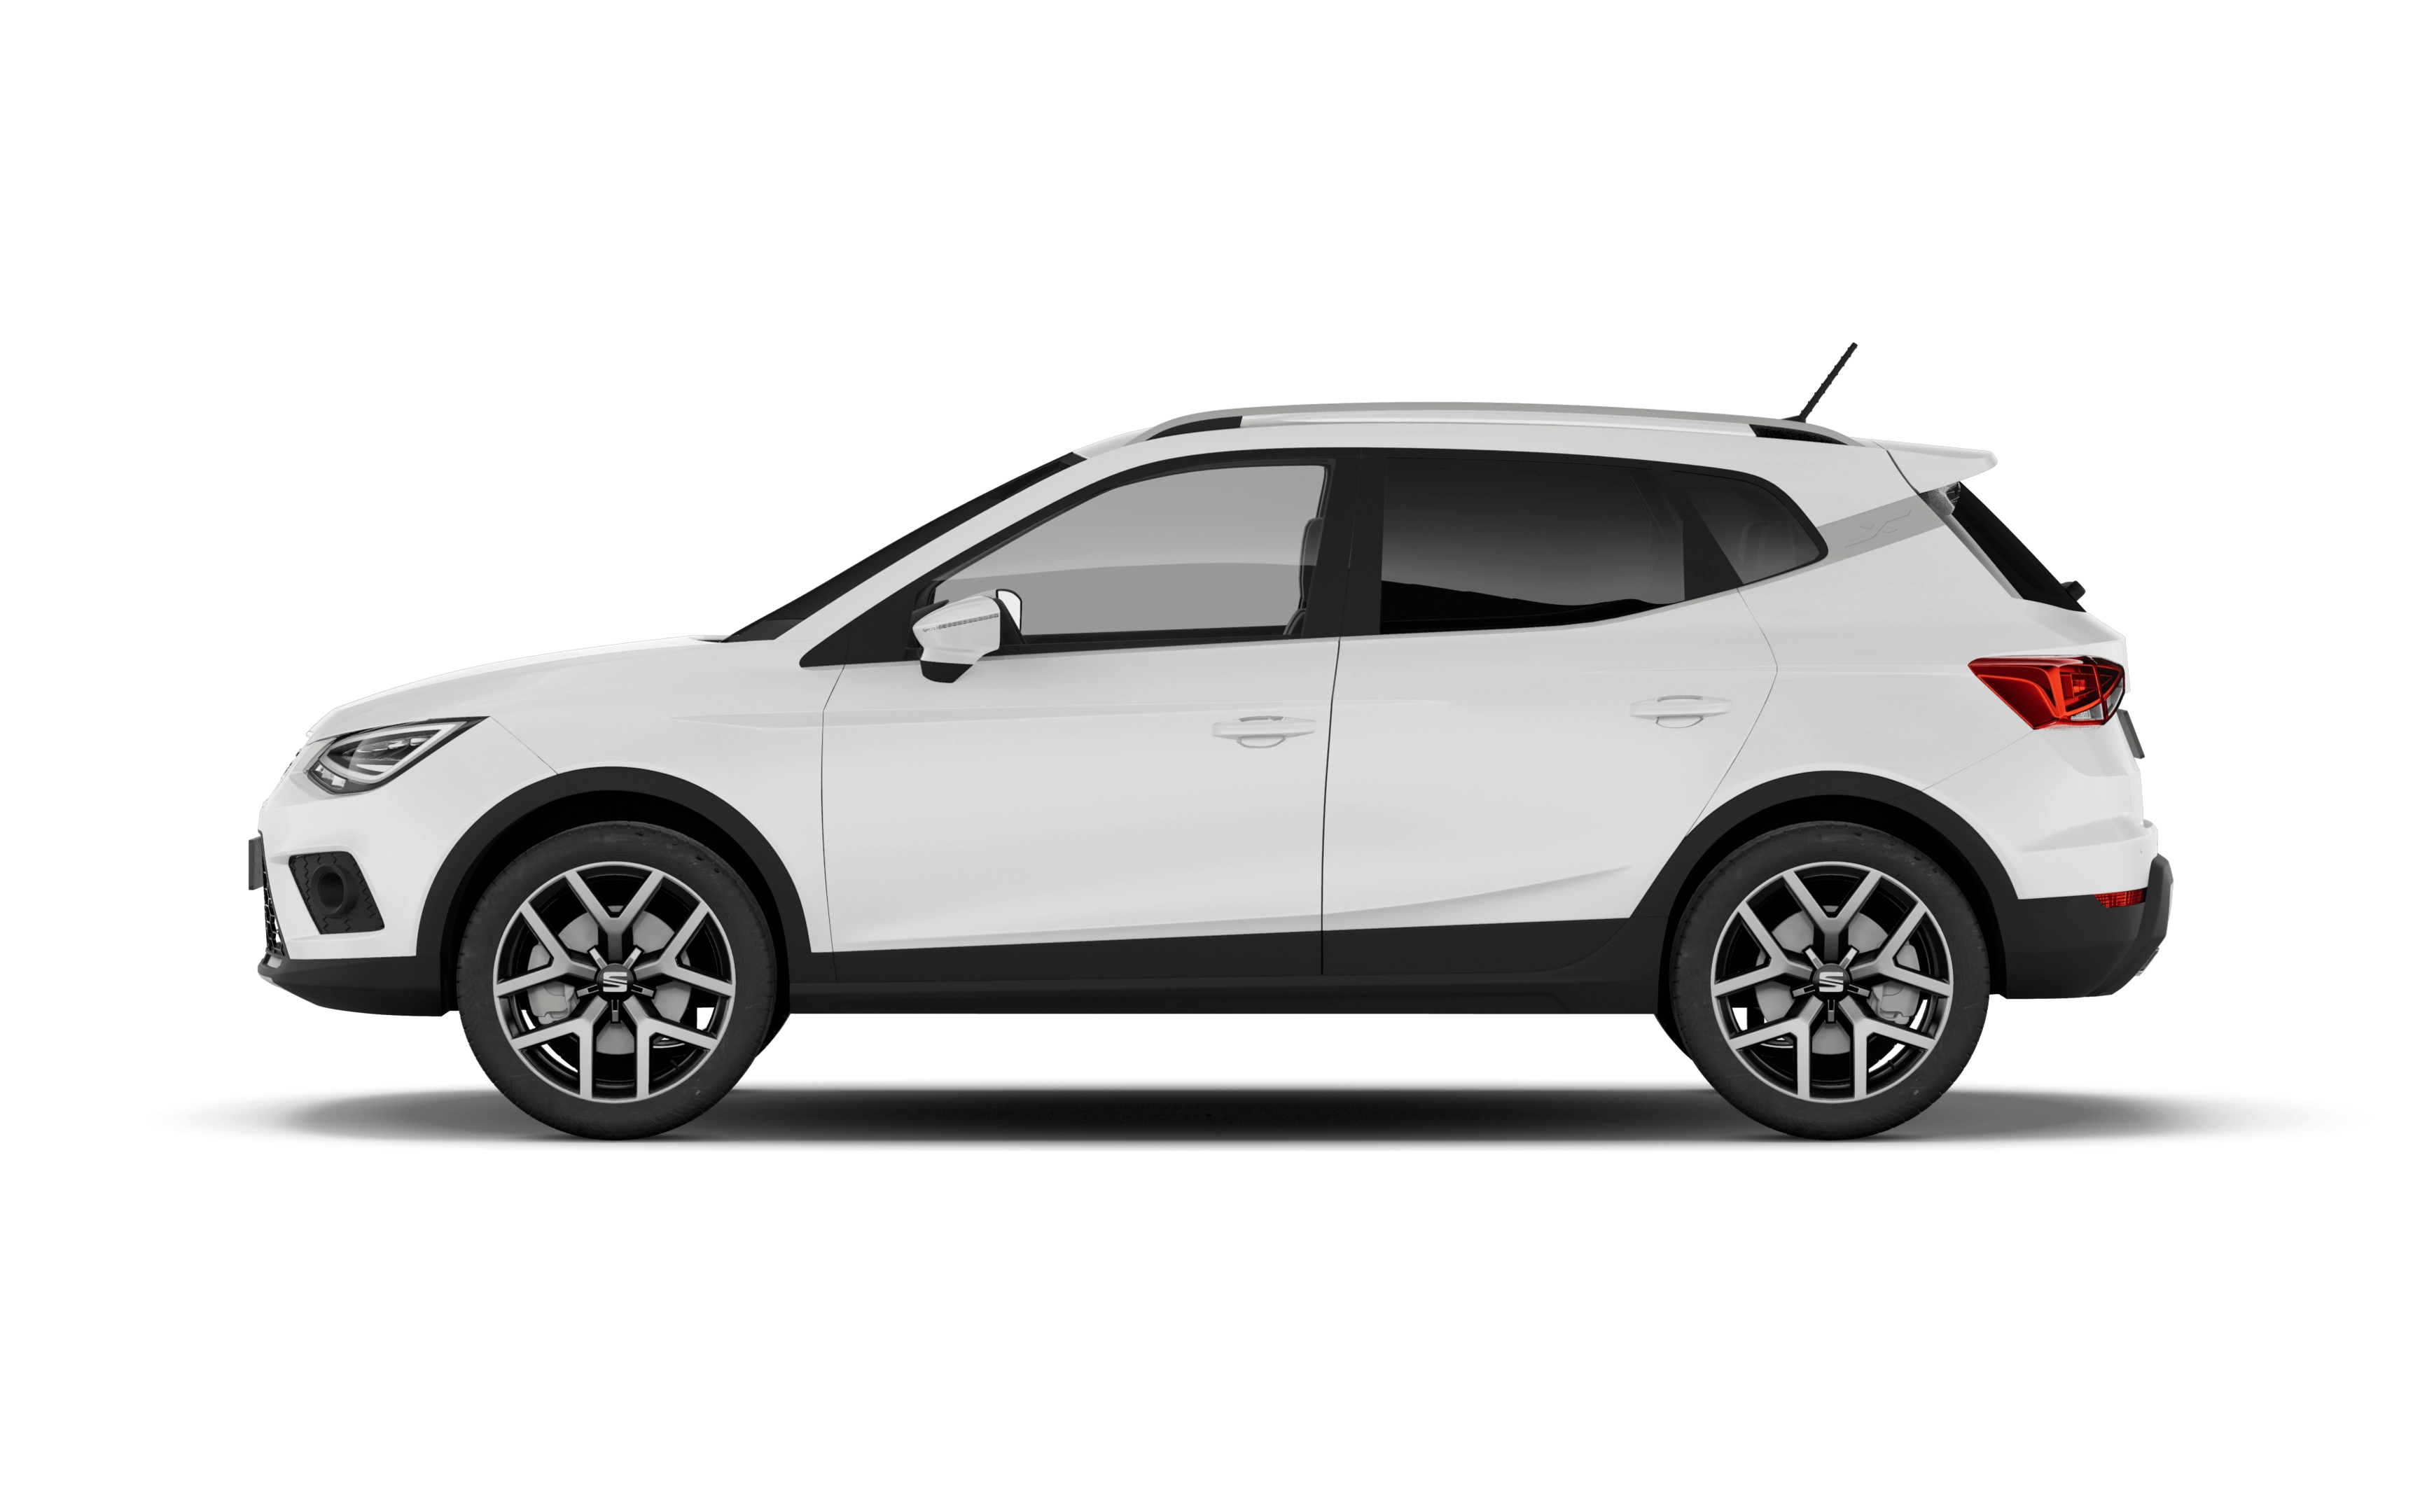 Seat arona hatchback 1.0 tsi 115 xperience 5 doors